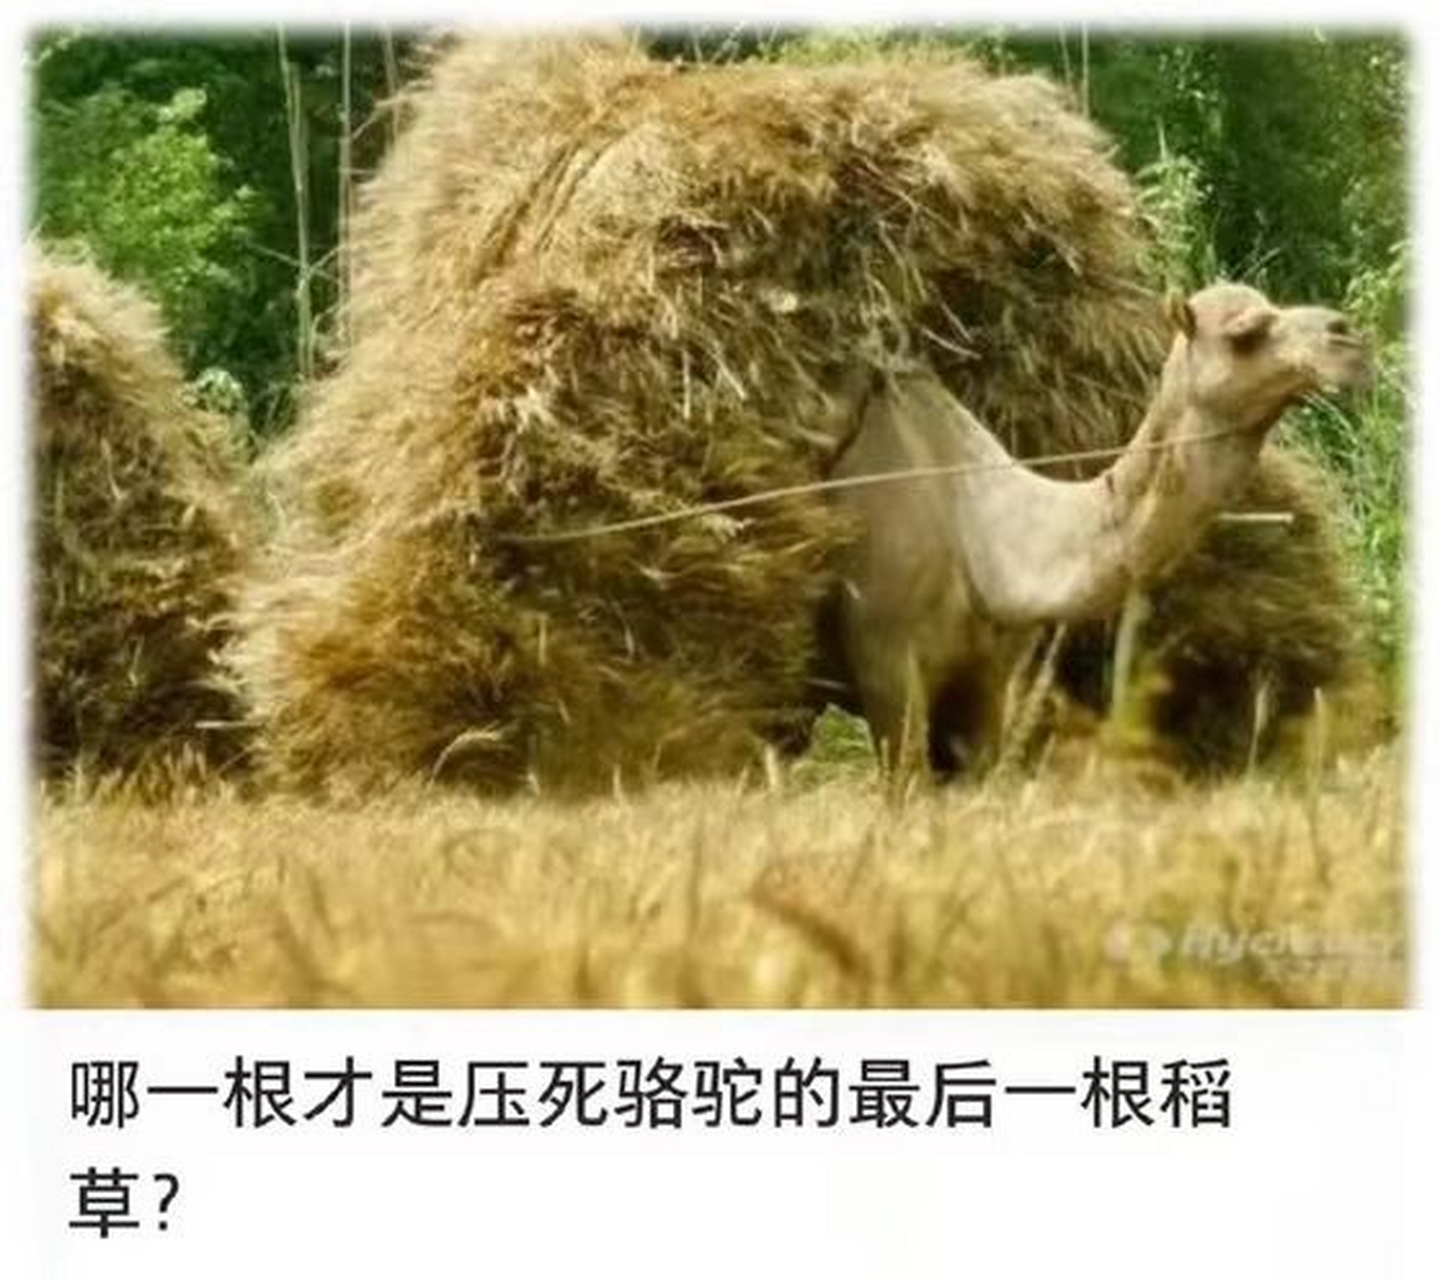 压死骆驼的,从来不是最后一根稻草,而是每一根稻草